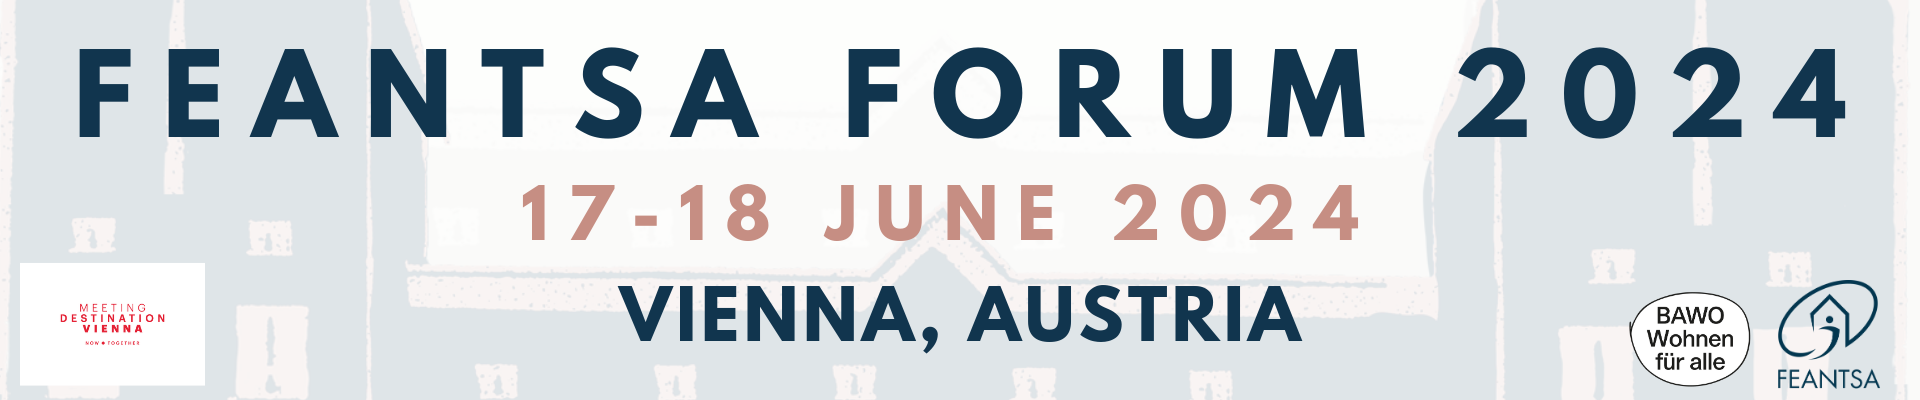 FEANTSA Forum - Vienna 2024